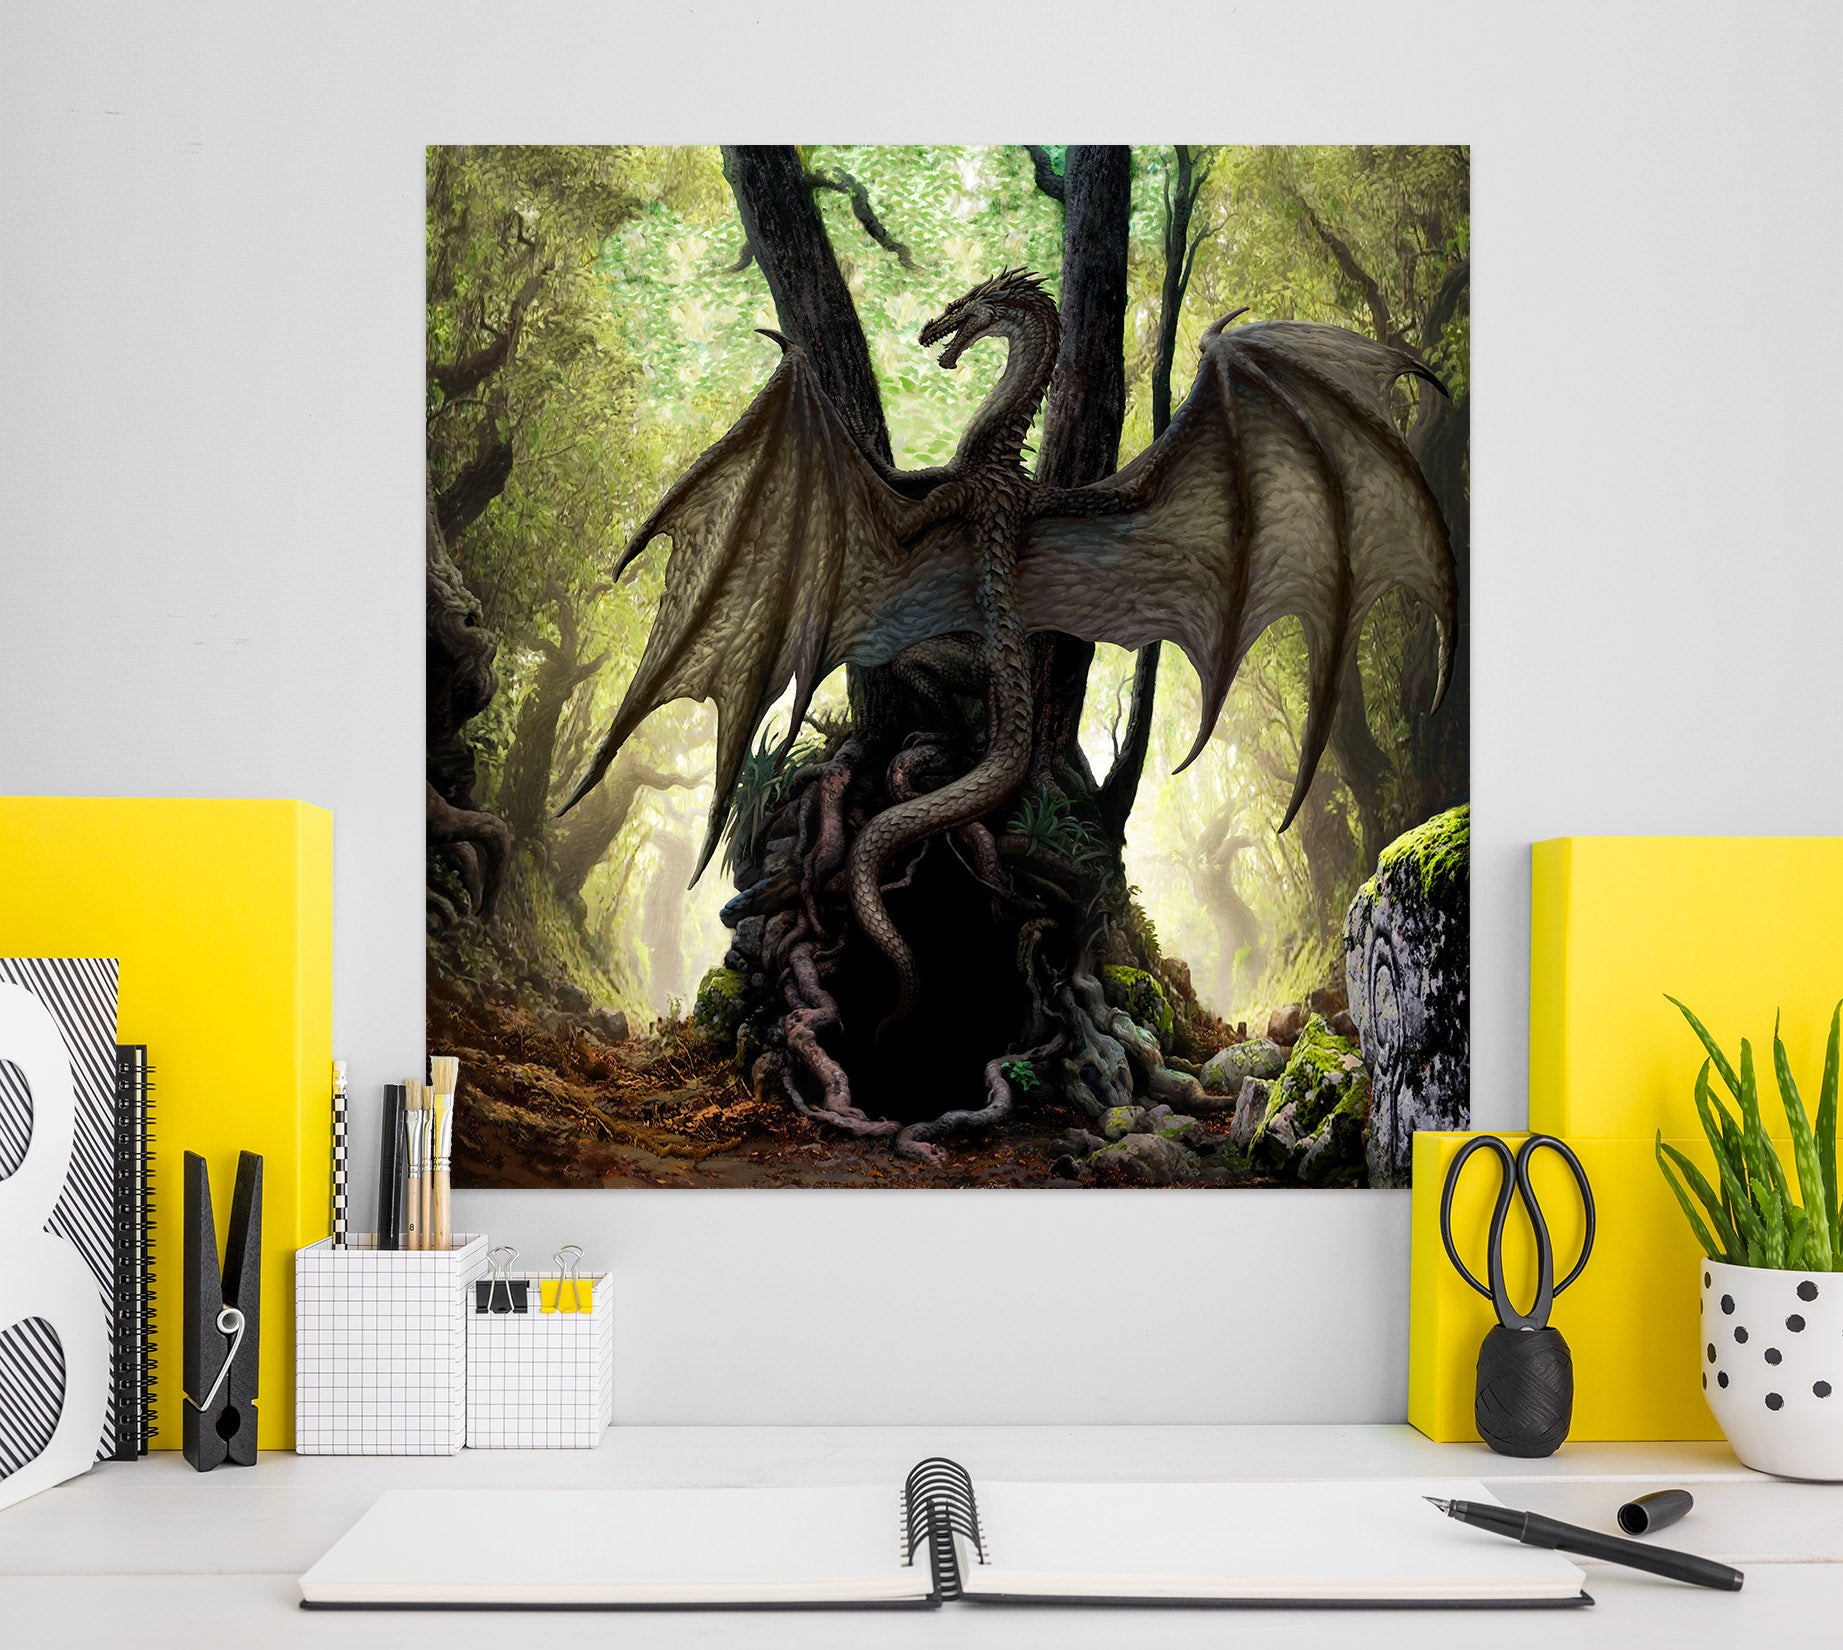 3D Dragon Forest 8066 Ciruelo Wall Sticker